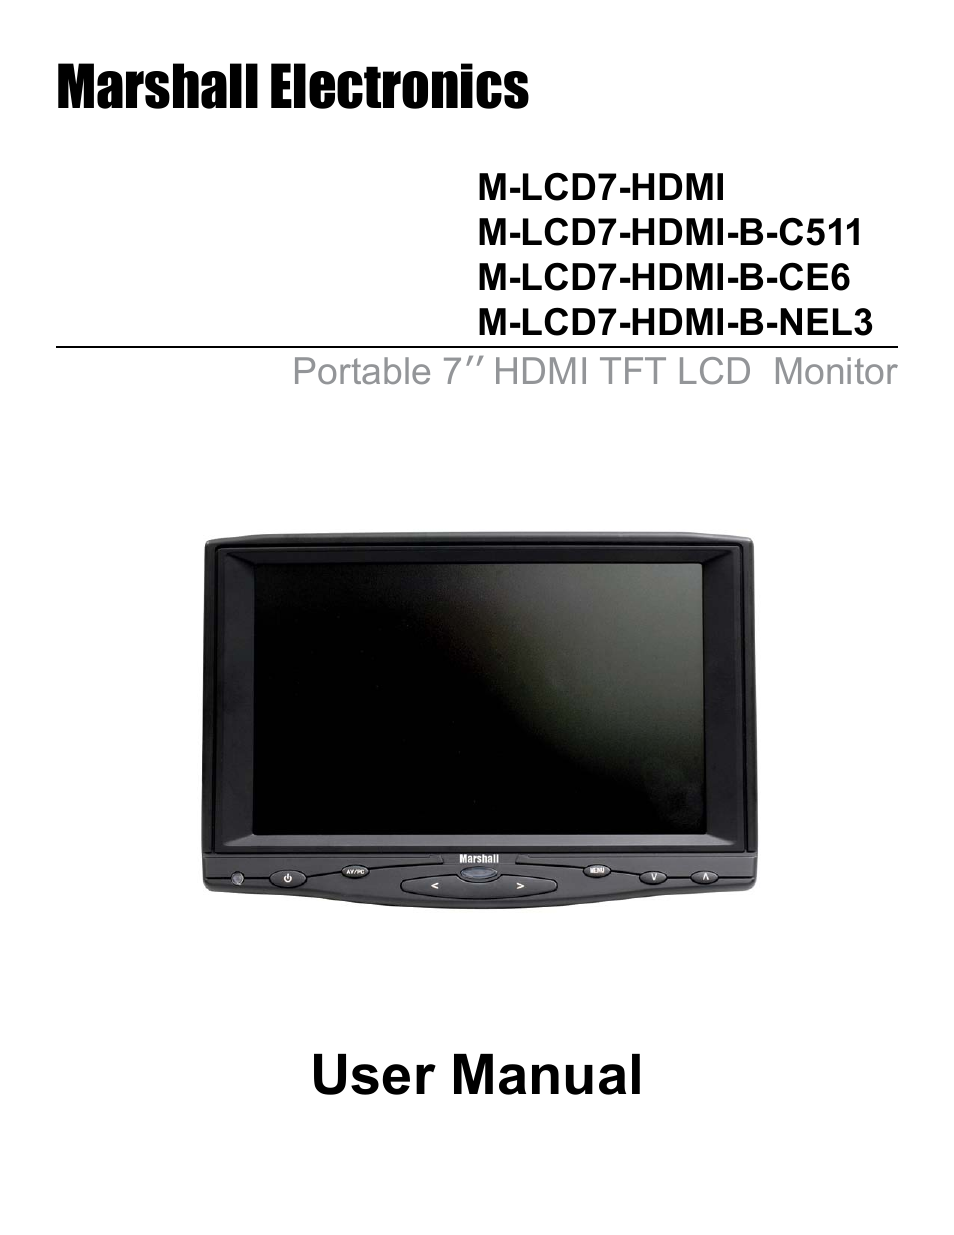 M-LCD7-HDMI-B-C511